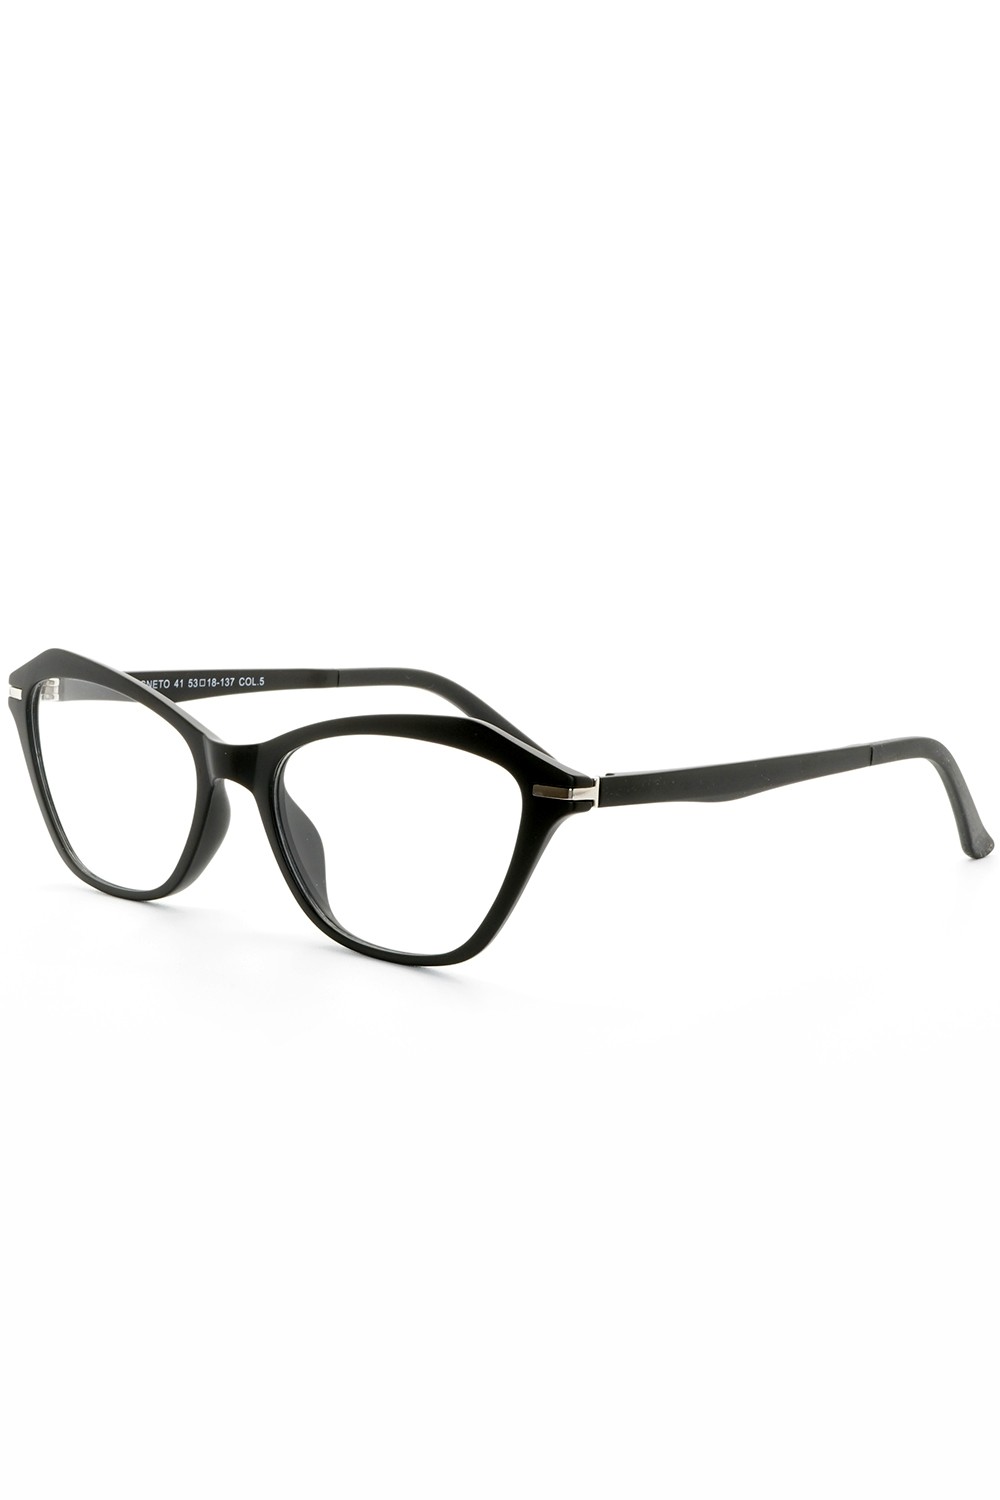 TF Occhiali - Occhiali da vista in plastica con clip solare cat eye per donna